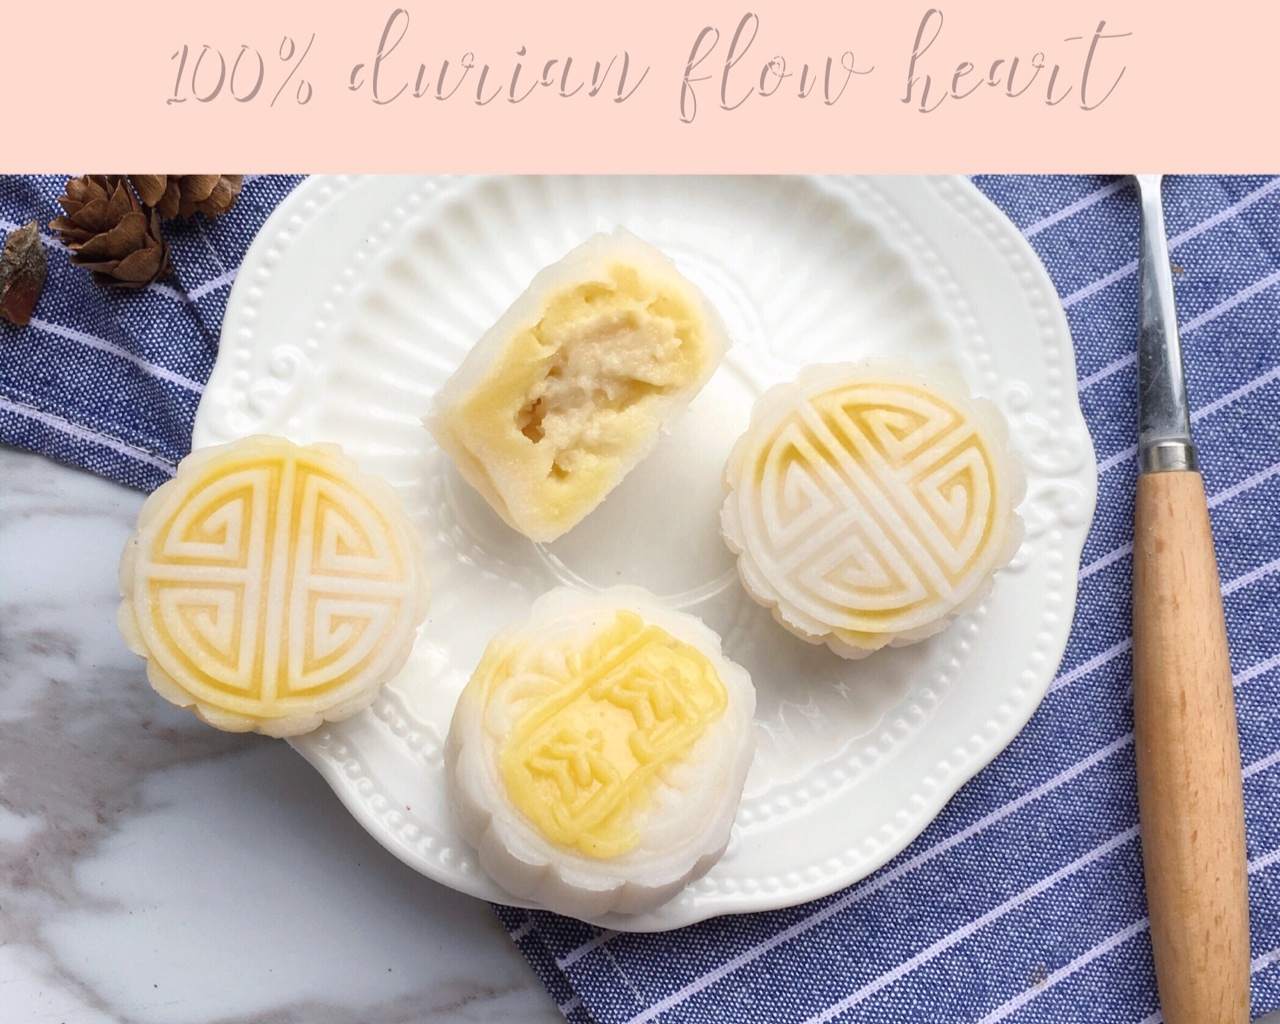 100%榴莲果肉流心奶酪月饼  | Durian cheese mooncakes with 100% durian flesh flow heart